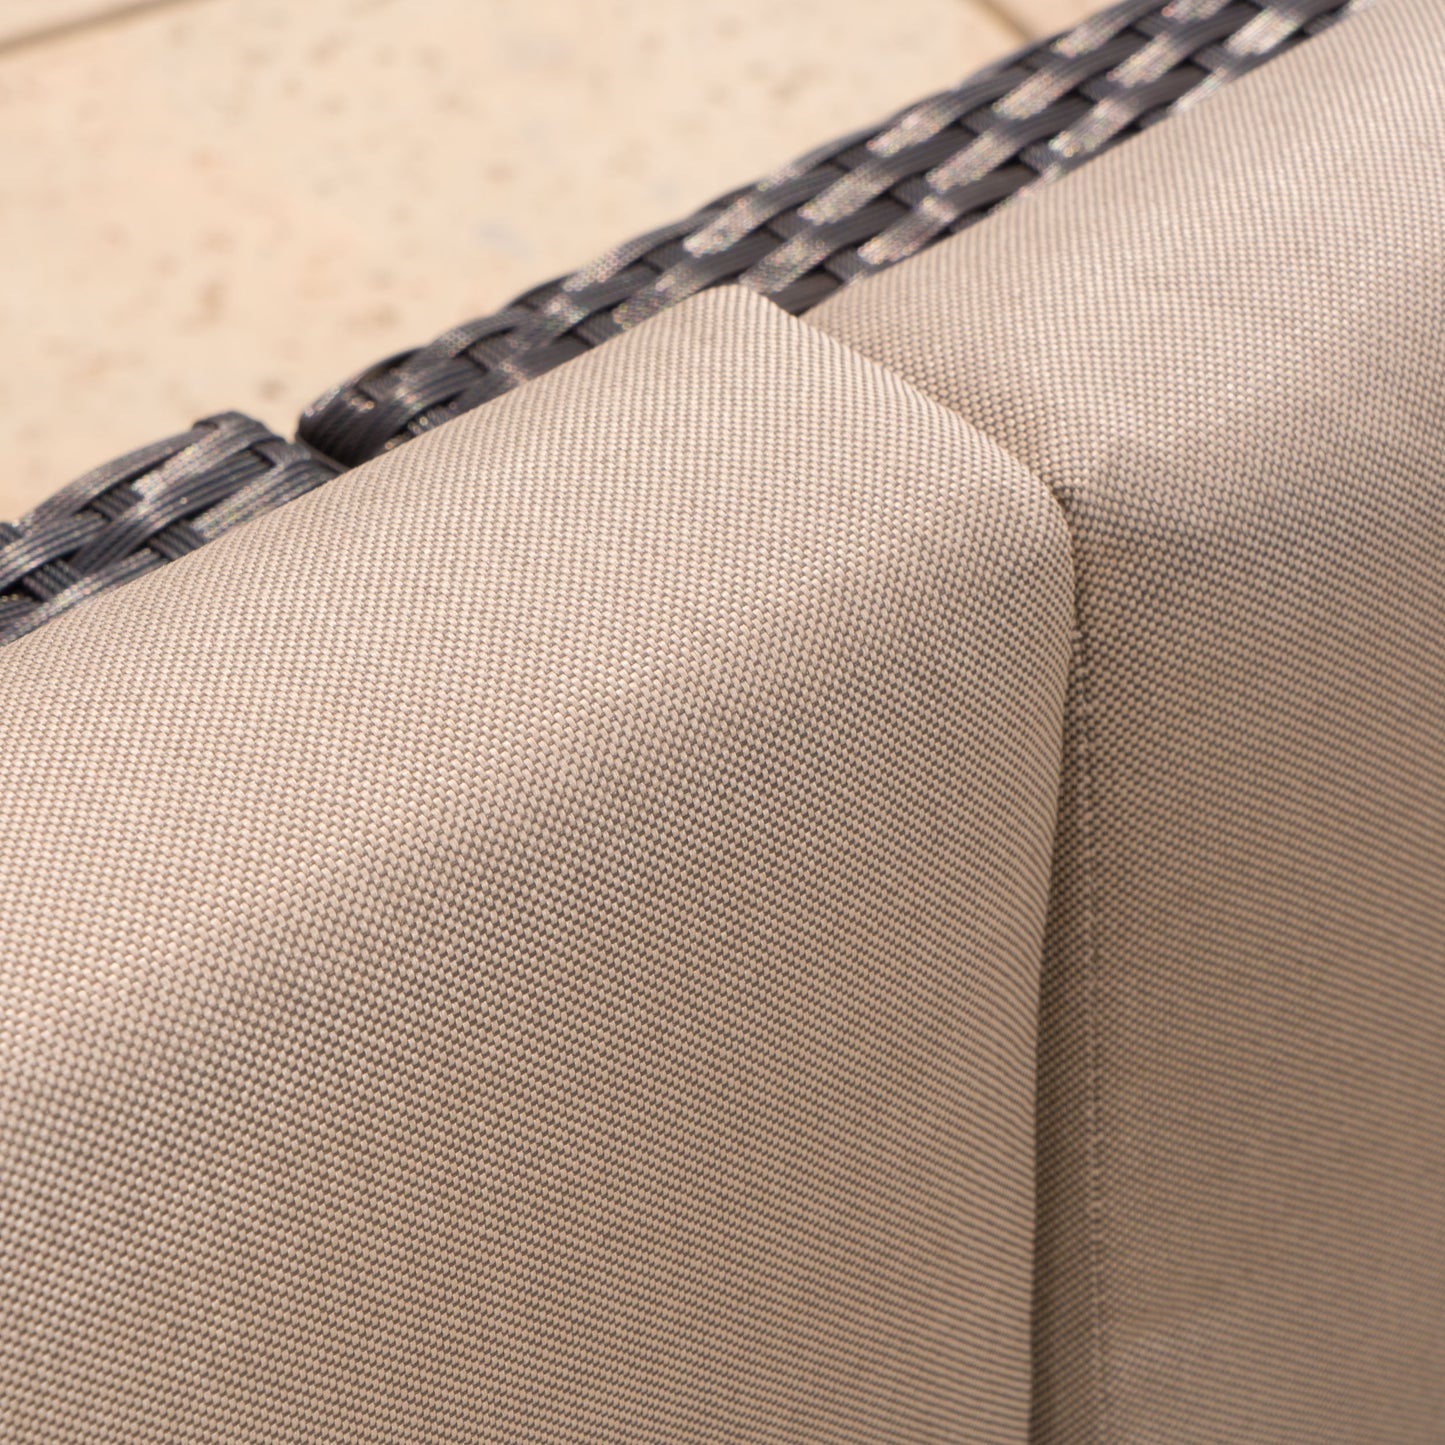 Valona Outdoor Wicker V Shaped Sectional Sofa Set